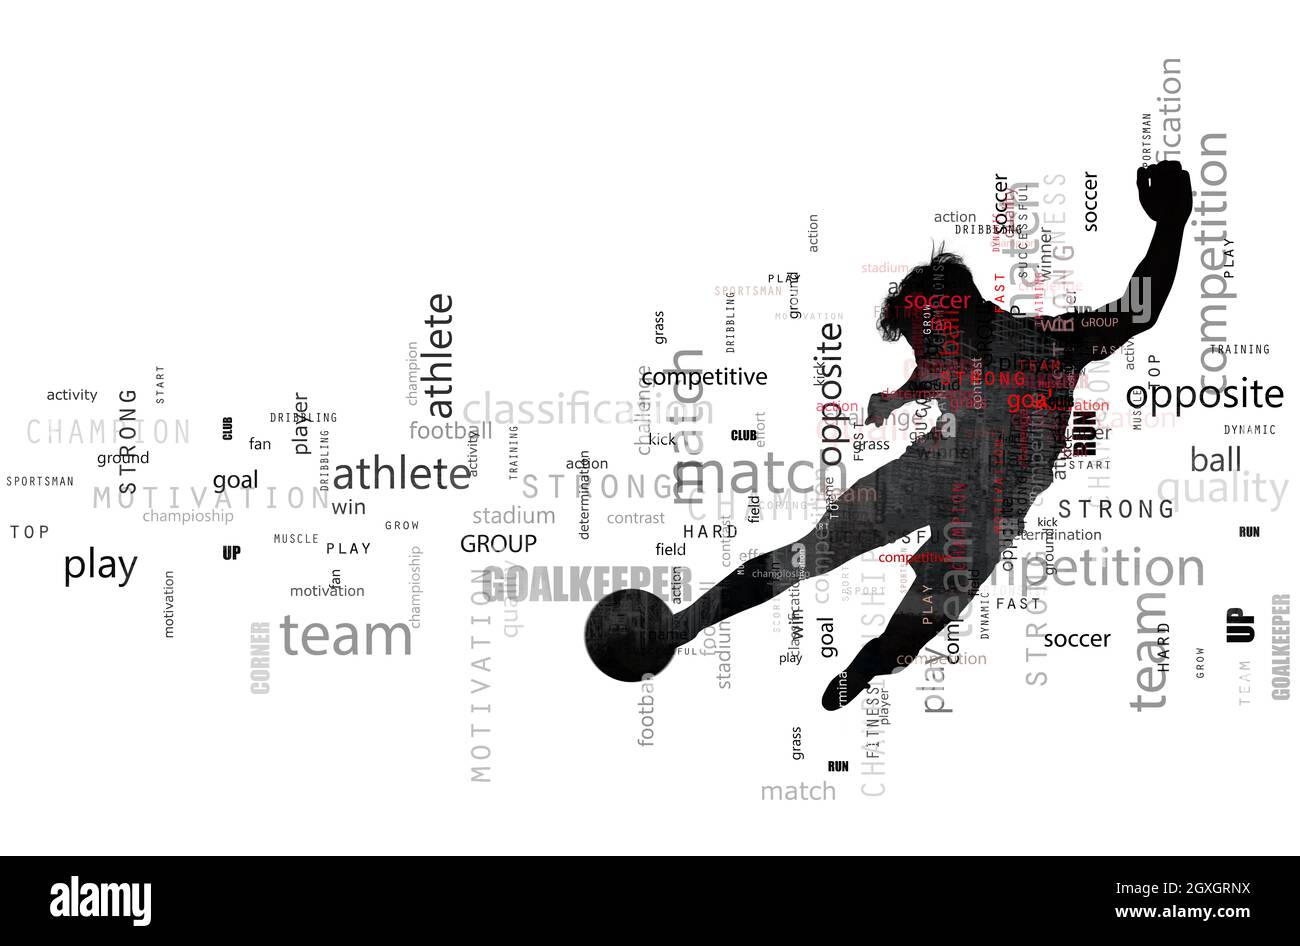 Scène de football d'une silhouette de joueur de football en action pendant un coup de pied. Effet de texte en superposition avec les termes les plus utilisés. Arrière-plan abstrait Banque D'Images